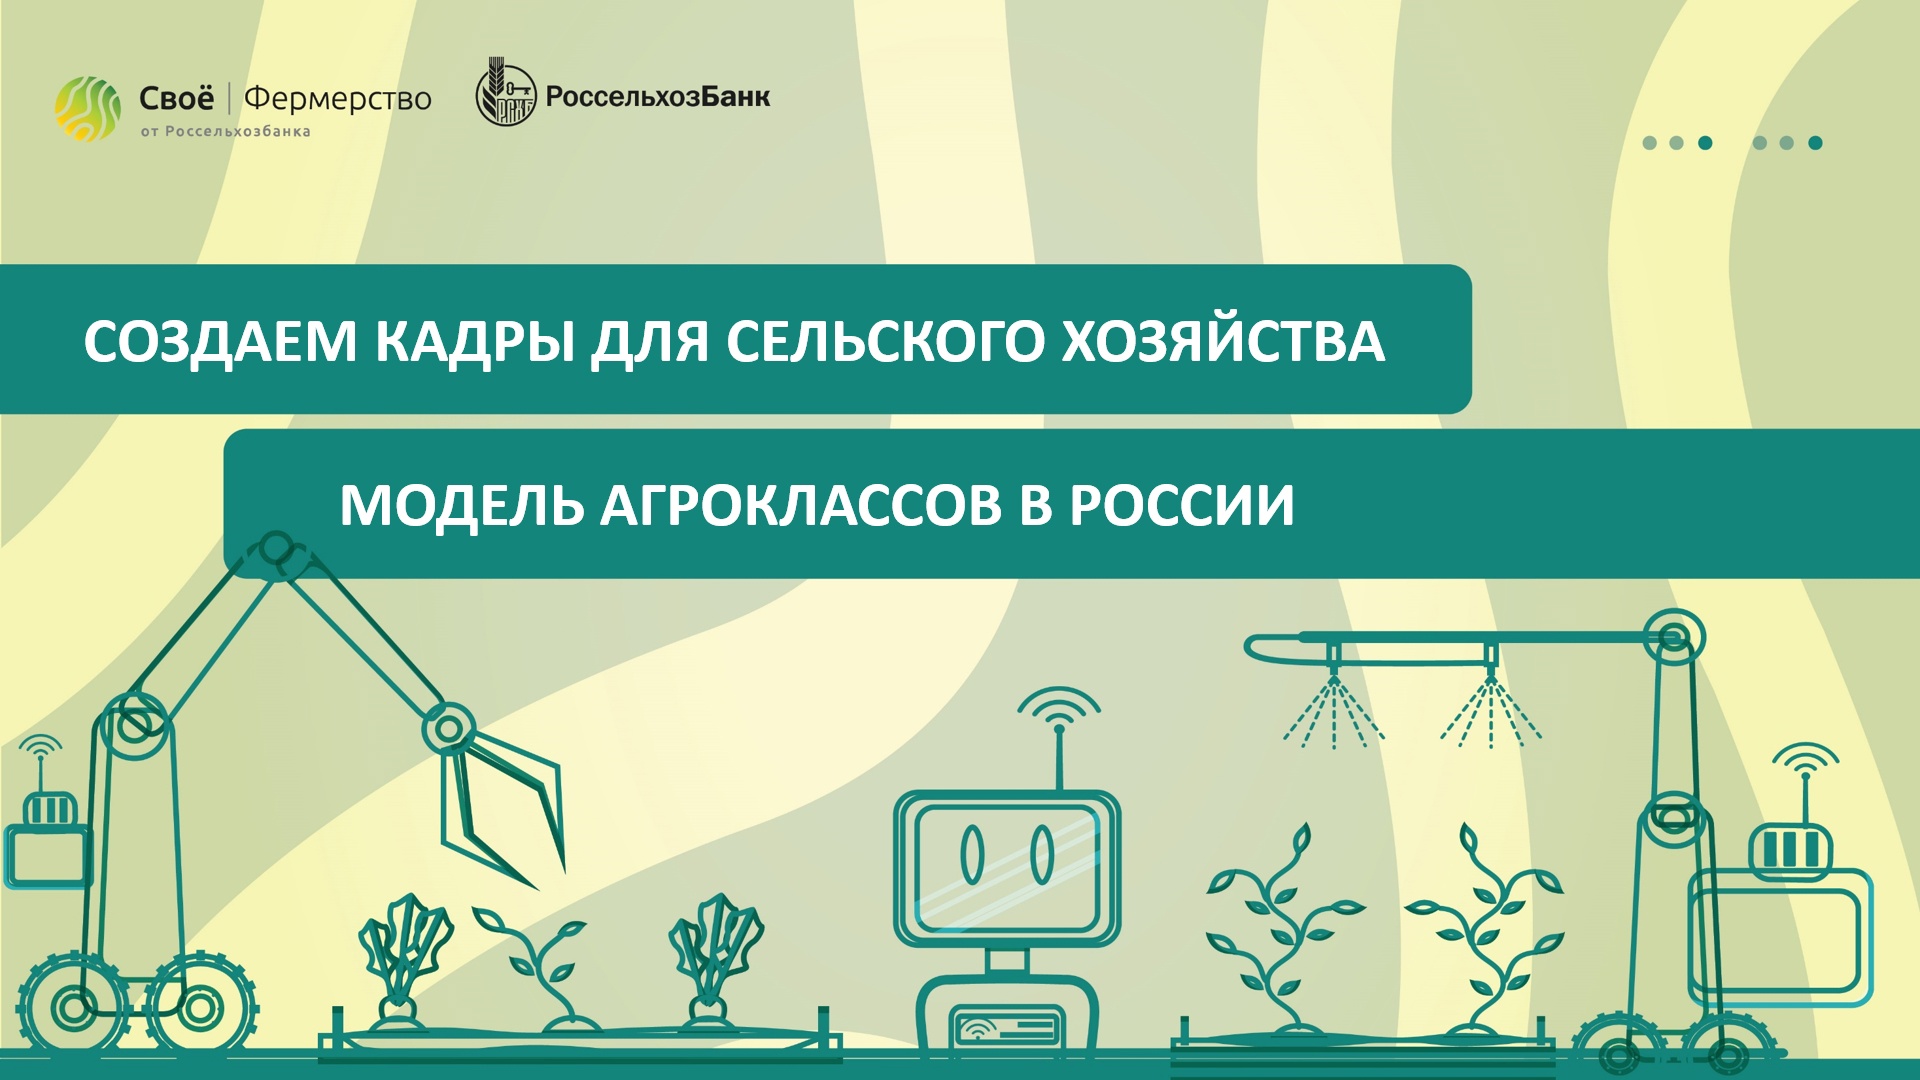 Создаем кадры для сельского хозяйства: модель агроклассов в России